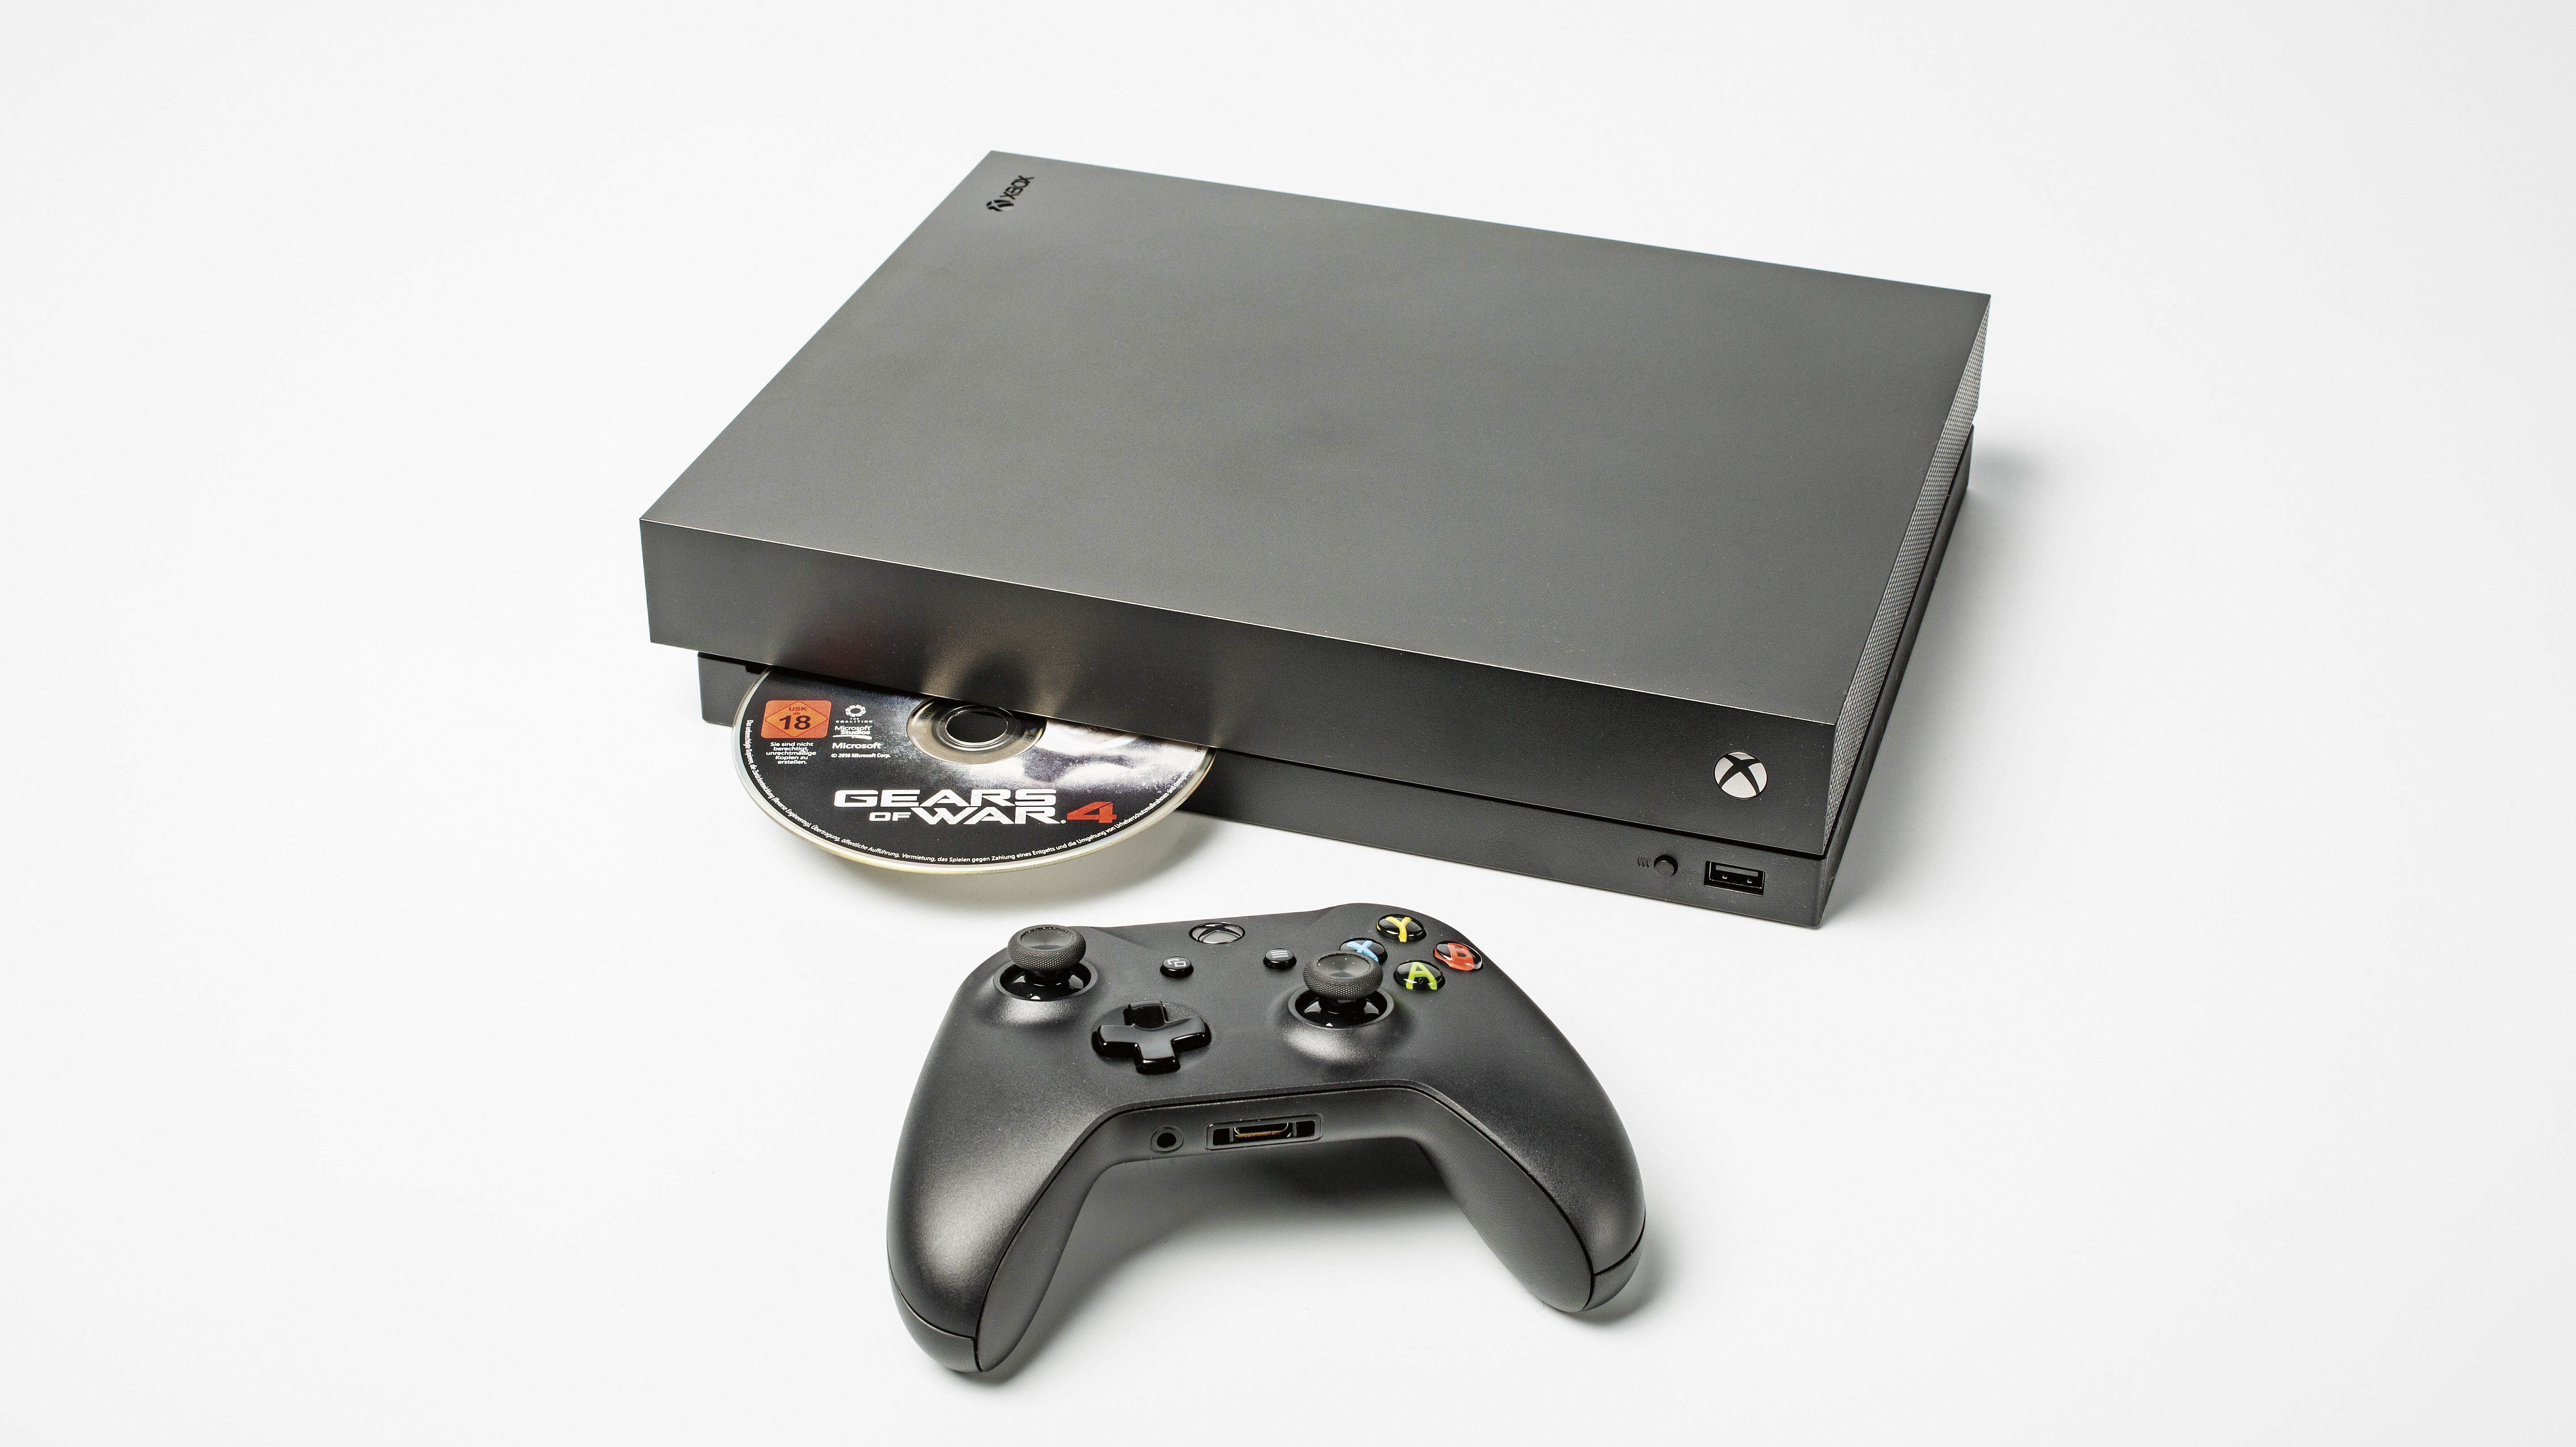 Erster Blick auf Xbox One X: Leiser als PS4 Pro, aber mit  Speicherplatzproblem | heise online